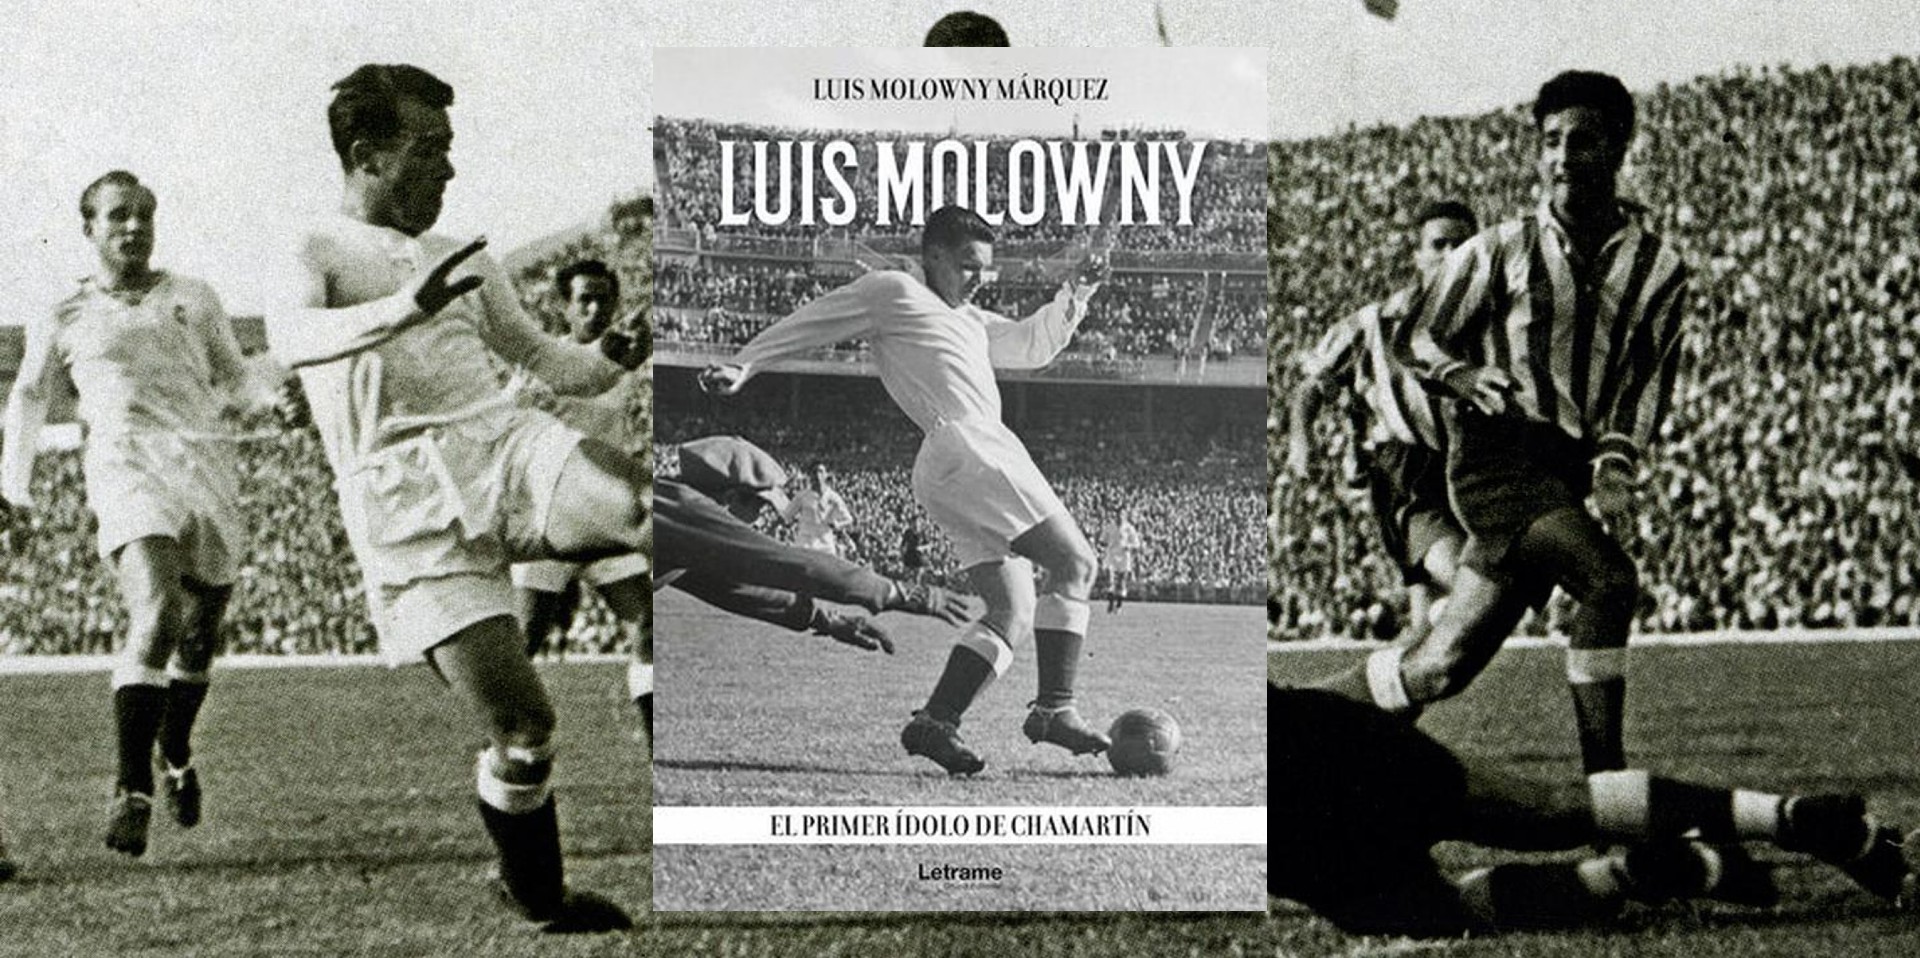 Portada del libro "Luis Molowny. El primer ídolo de Chamartín", de Luis Molowny Márquez. (Letrame).